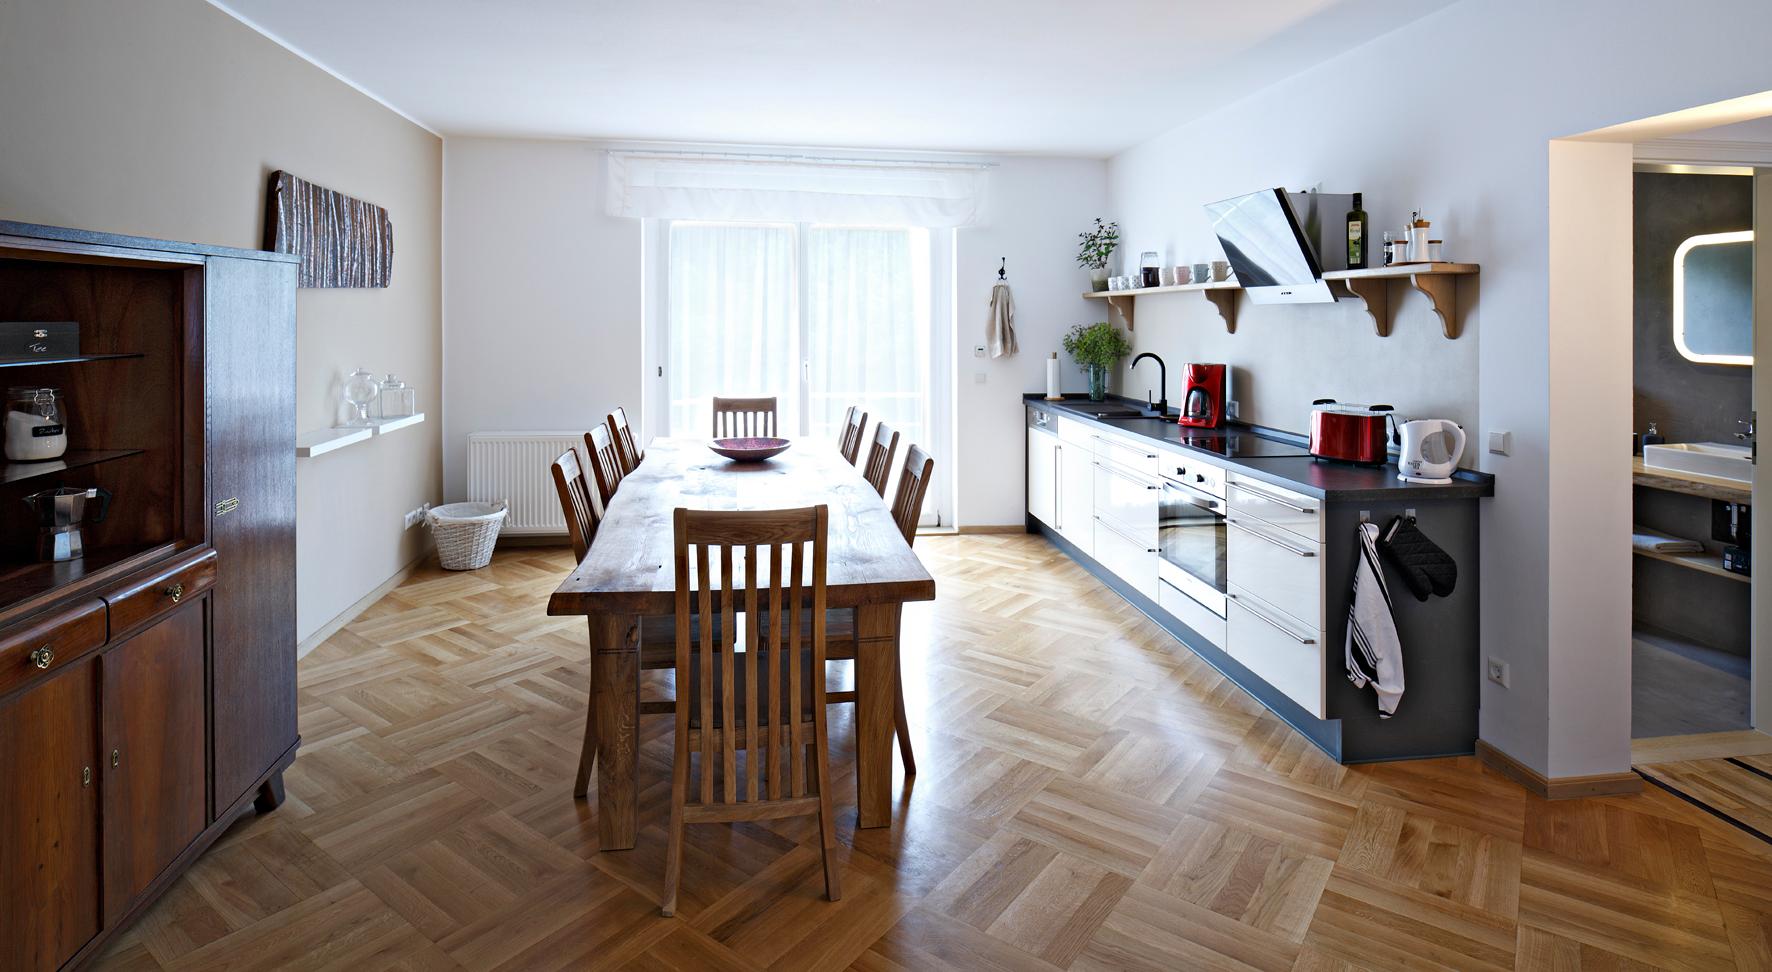 Offene Wohnküche mit Holztisch #esstisch #offeneküche #rustikalerholztisch ©Daniel Wetzel